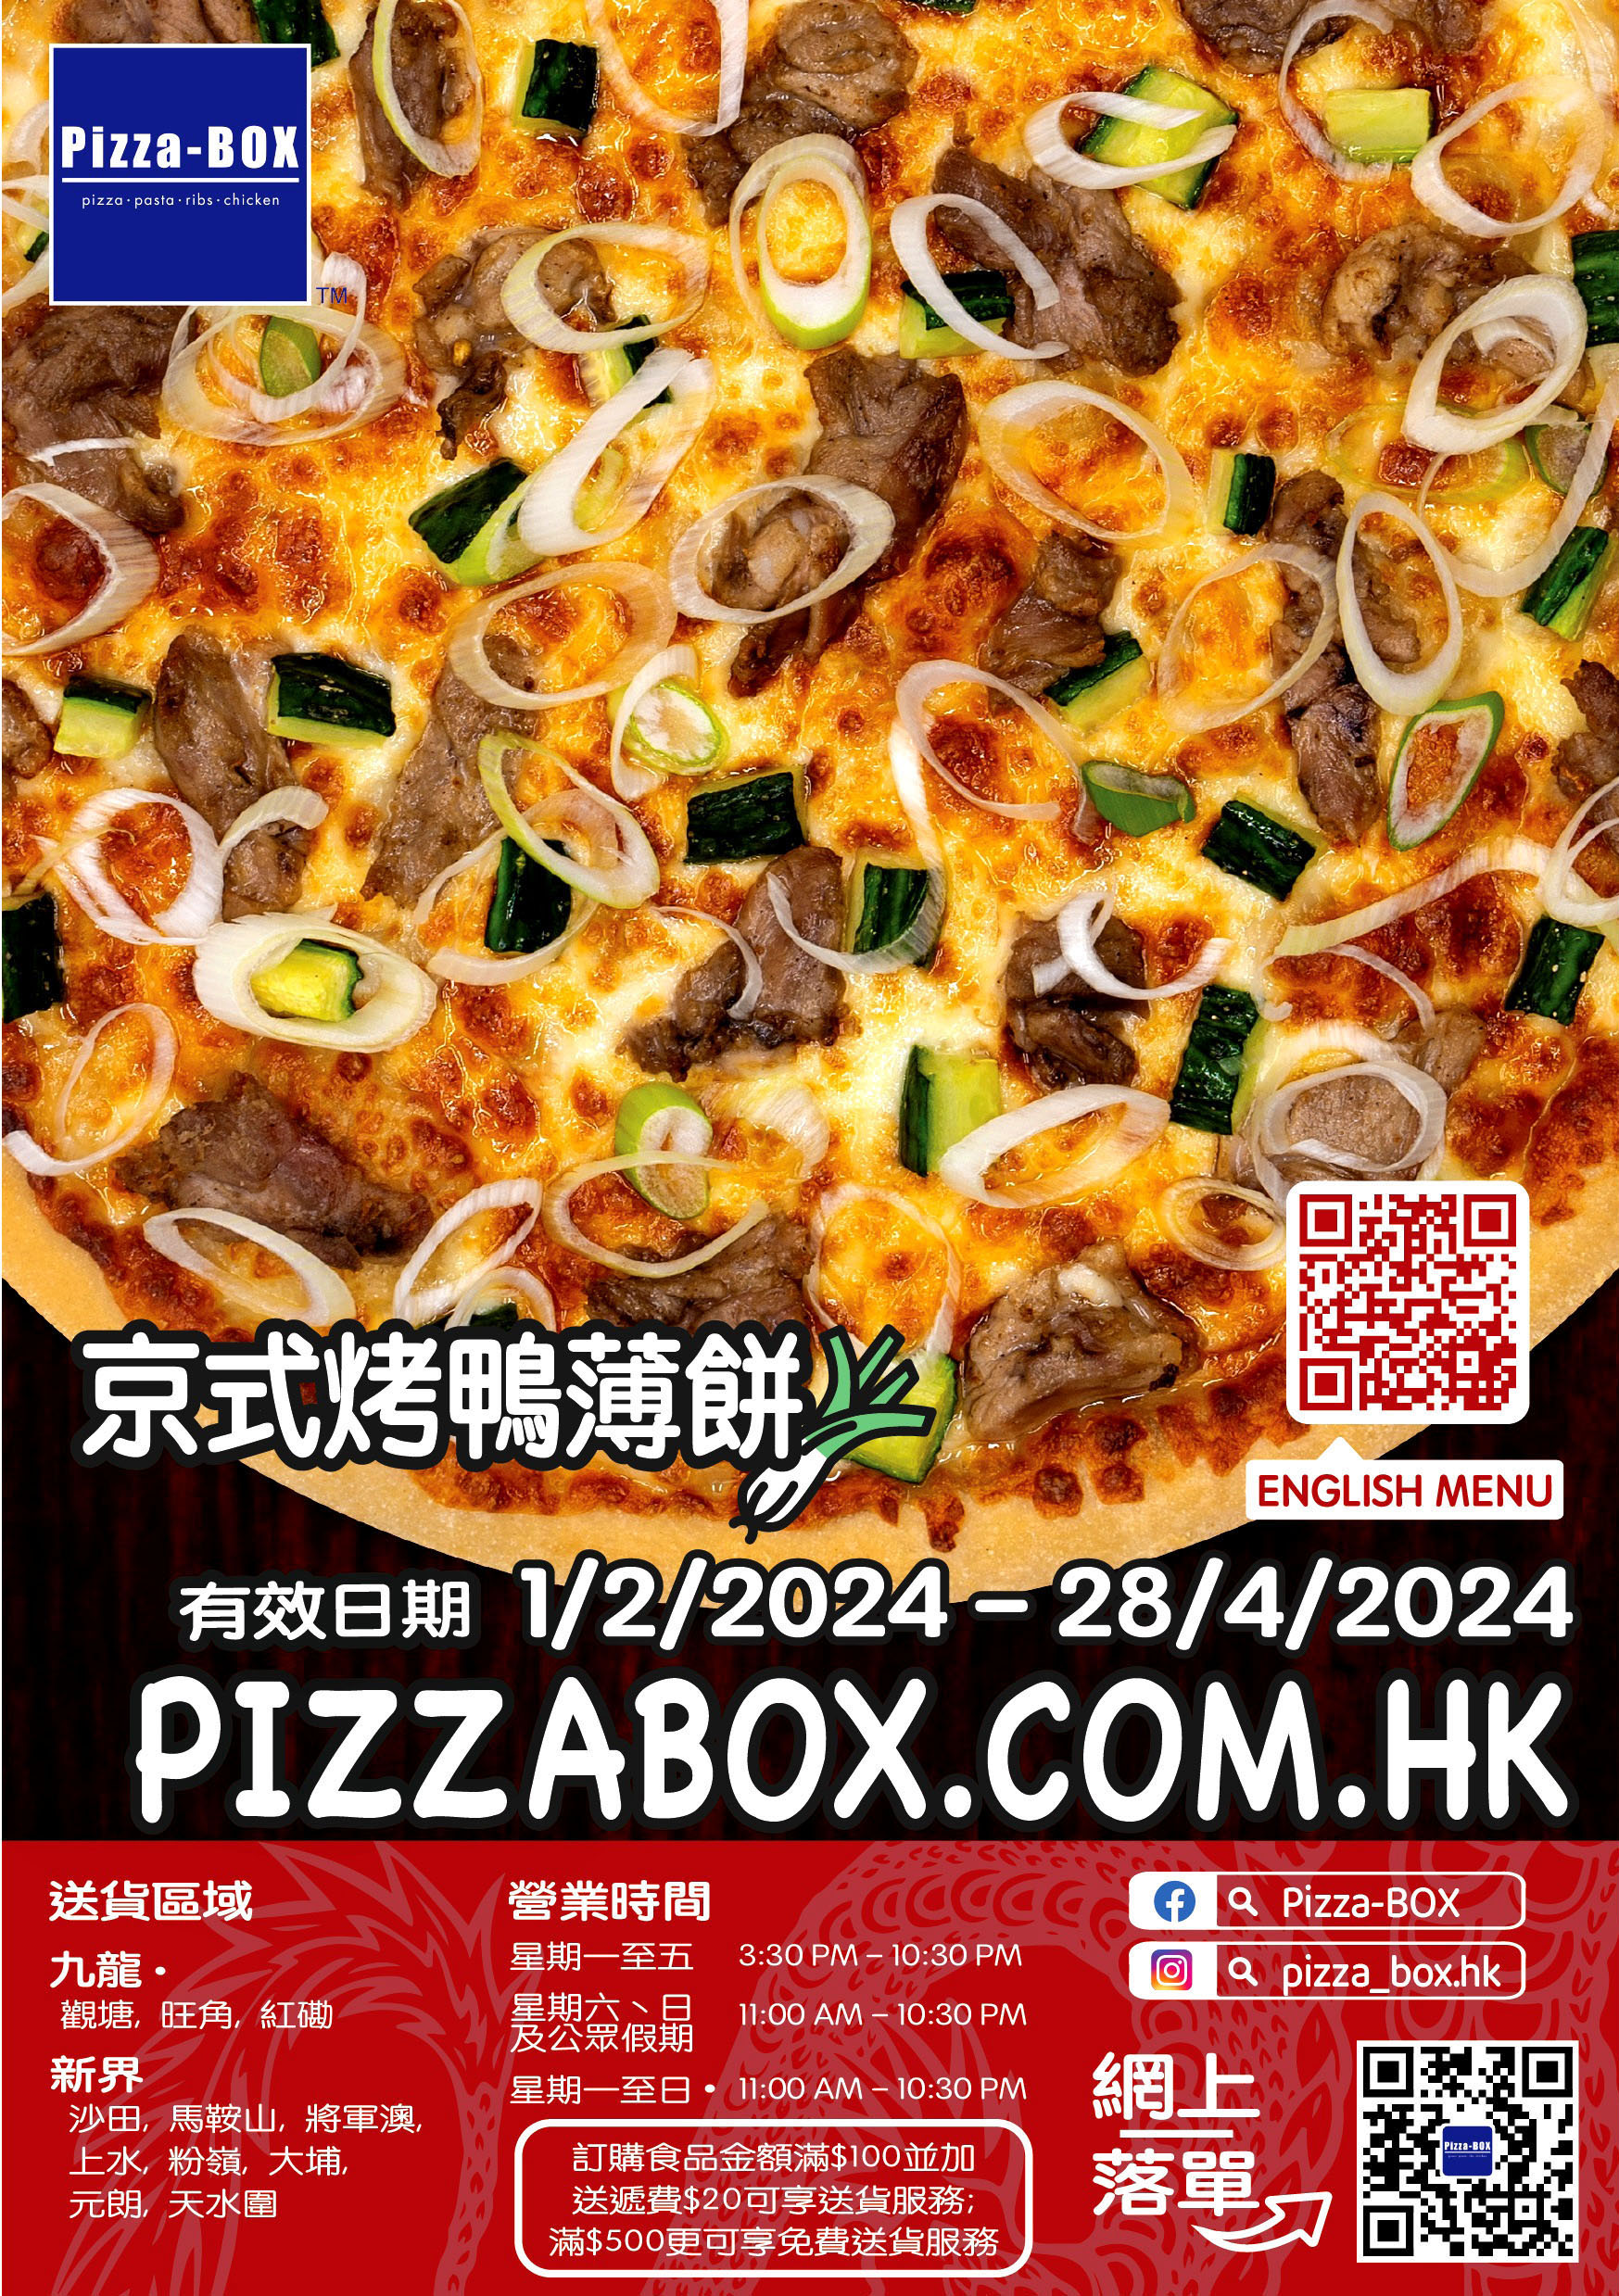 香香港pizza box薄餅速遞服務 pizza box delivery menu promotion package hong kong 美食學生優惠價錢自取外紙賣服務餐劵餐單特價格餐牌價目表